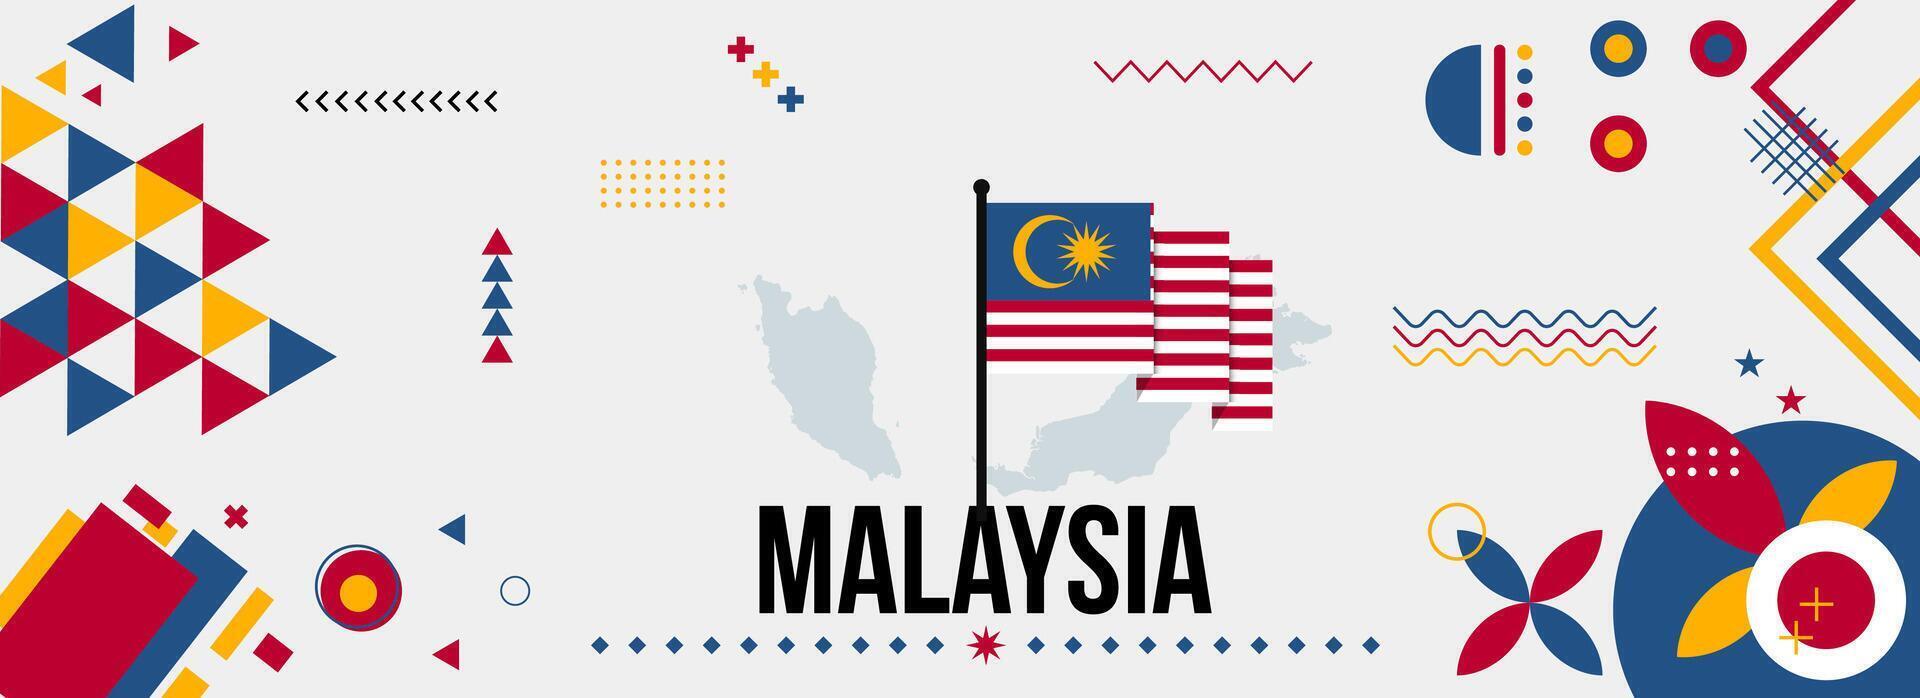 Malasia nacional o independencia día bandera para país celebracion. bandera y mapa de Malasia con moderno retro diseño con tiporgafia resumen geométrico iconos vector ilustración.